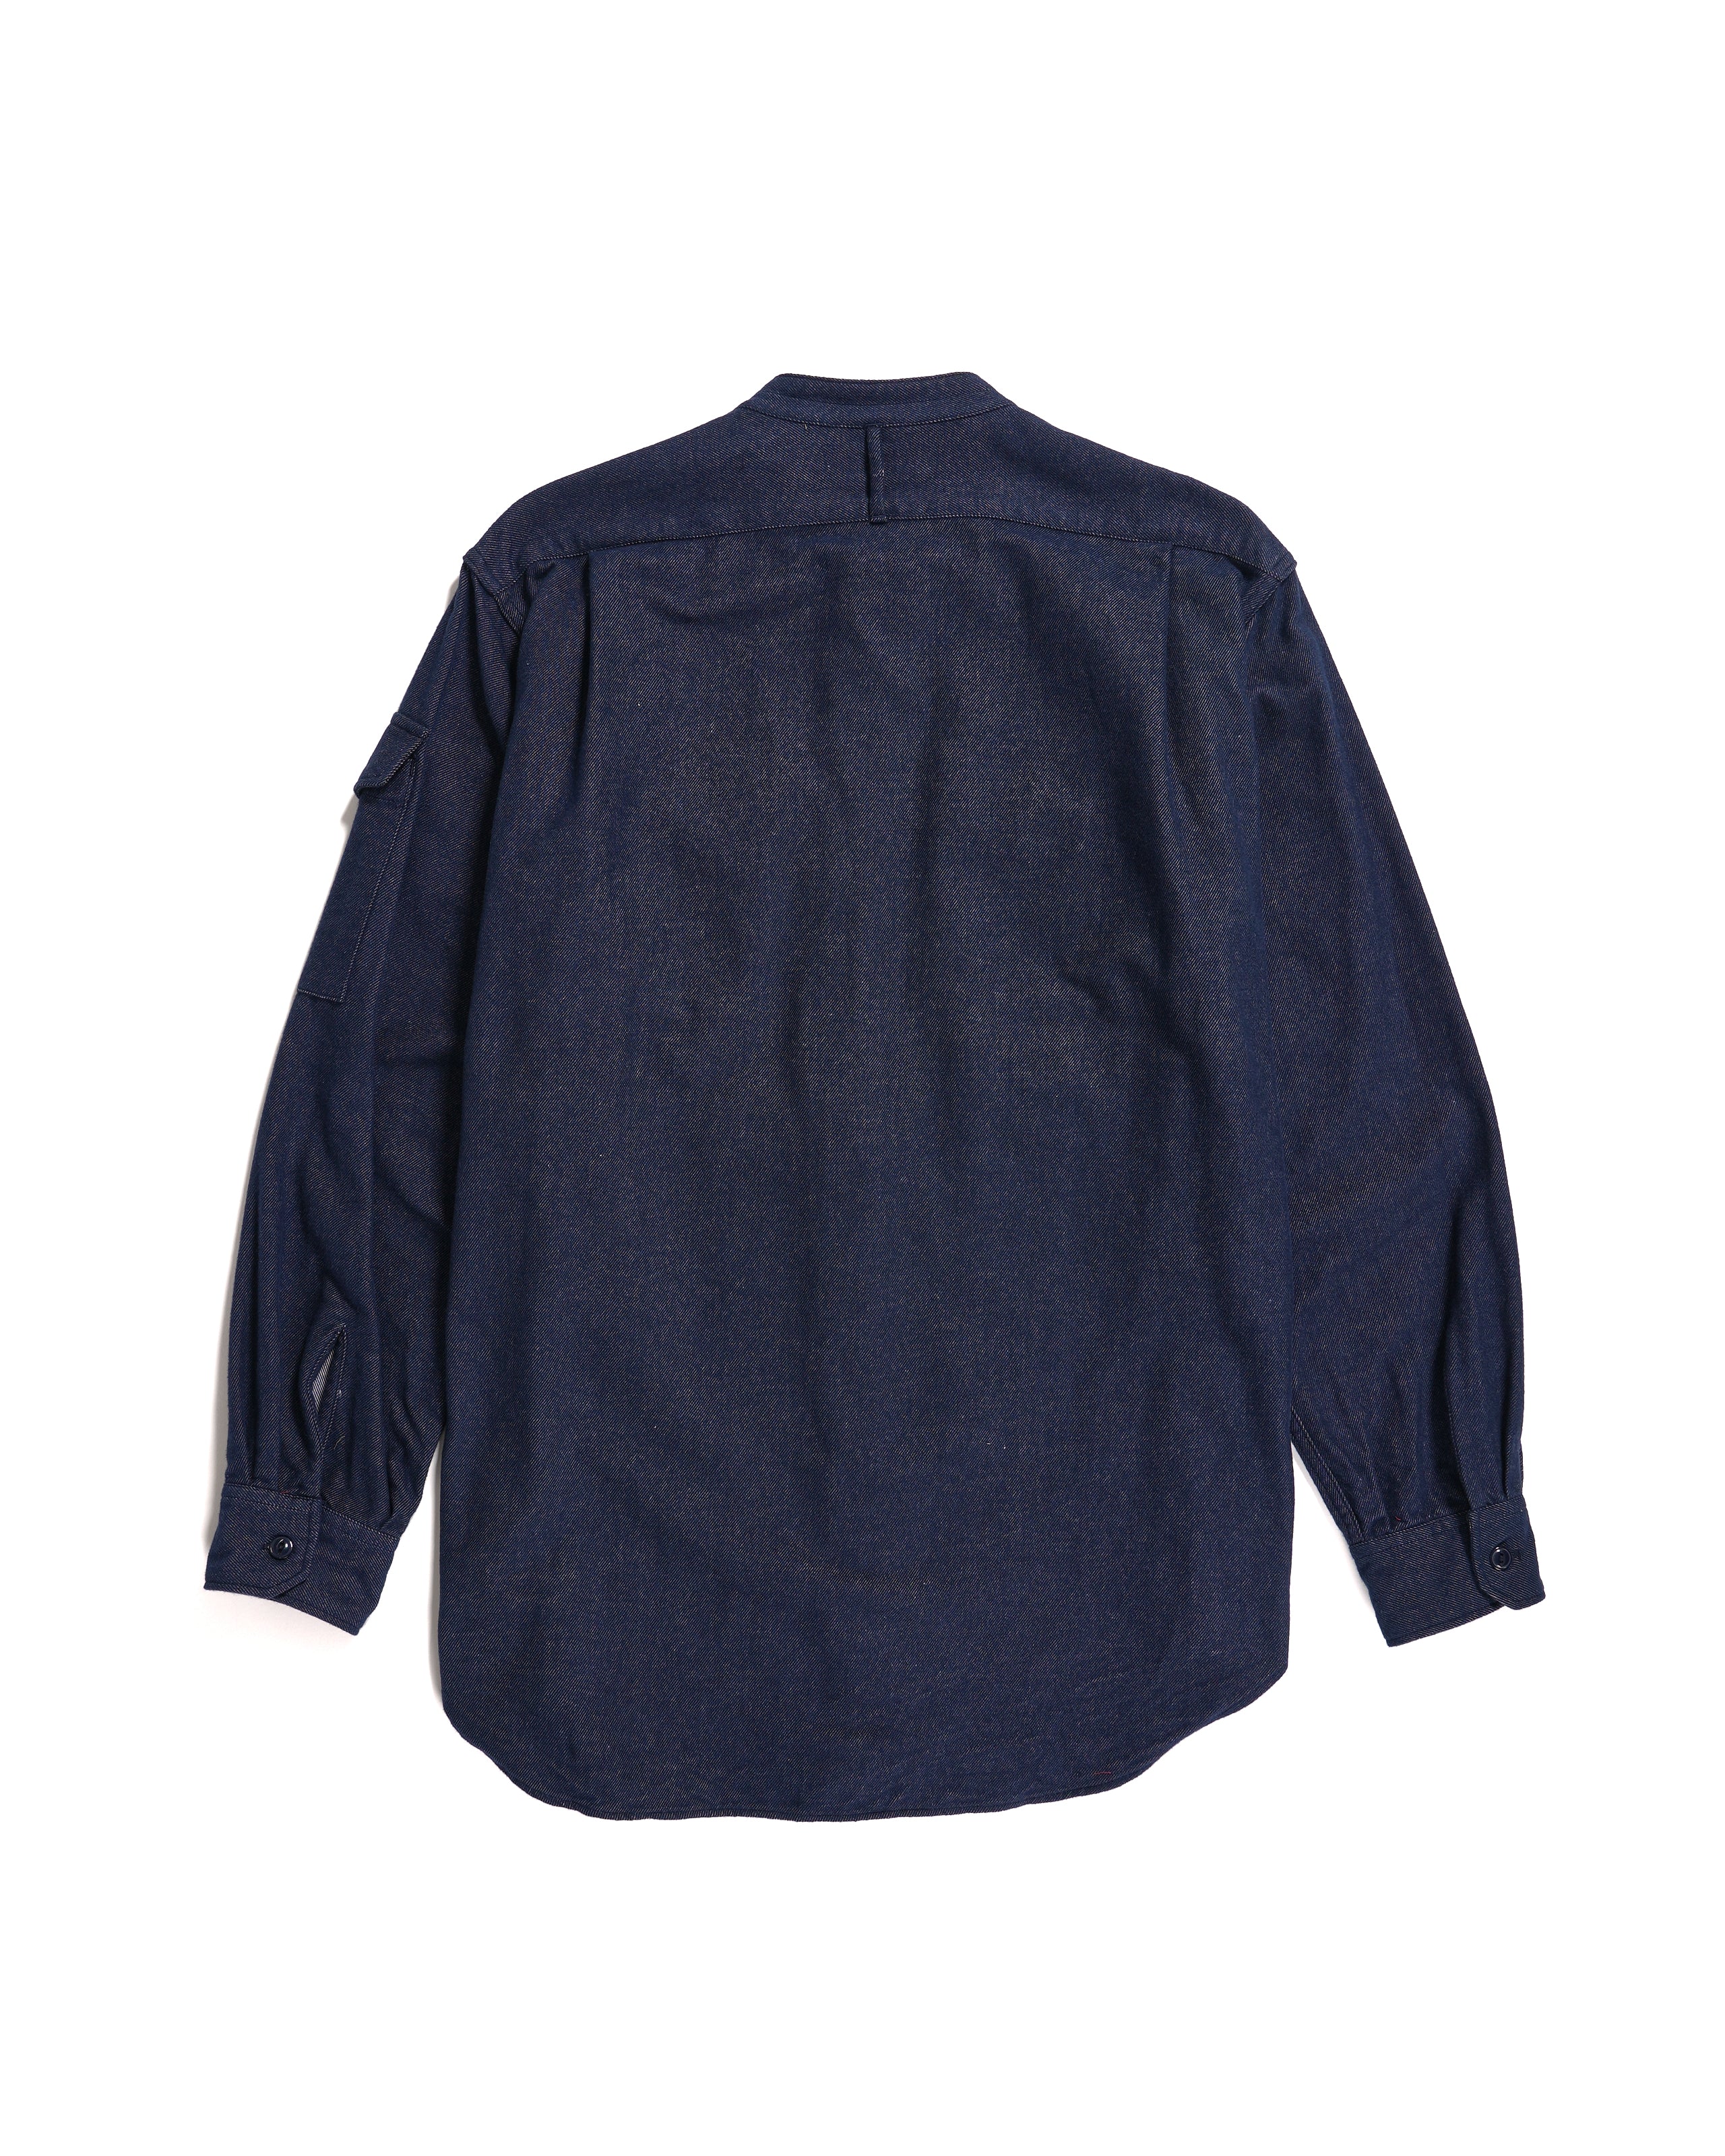 North Western Shirt - Indigo Cotton Denim Flannel